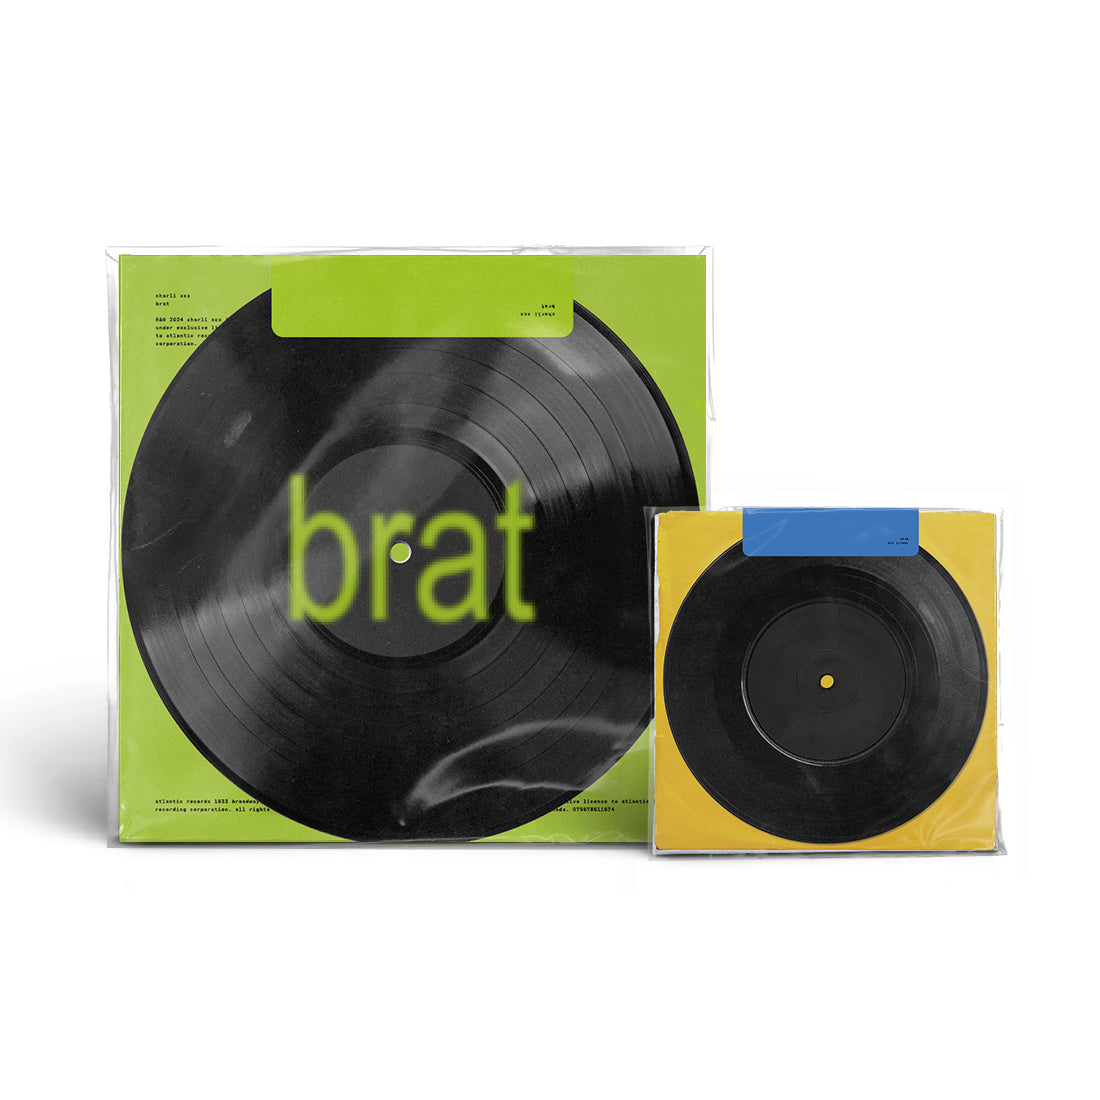 BRAT (includes the Club classics / B2b 7” vinyl) – Charli XCX